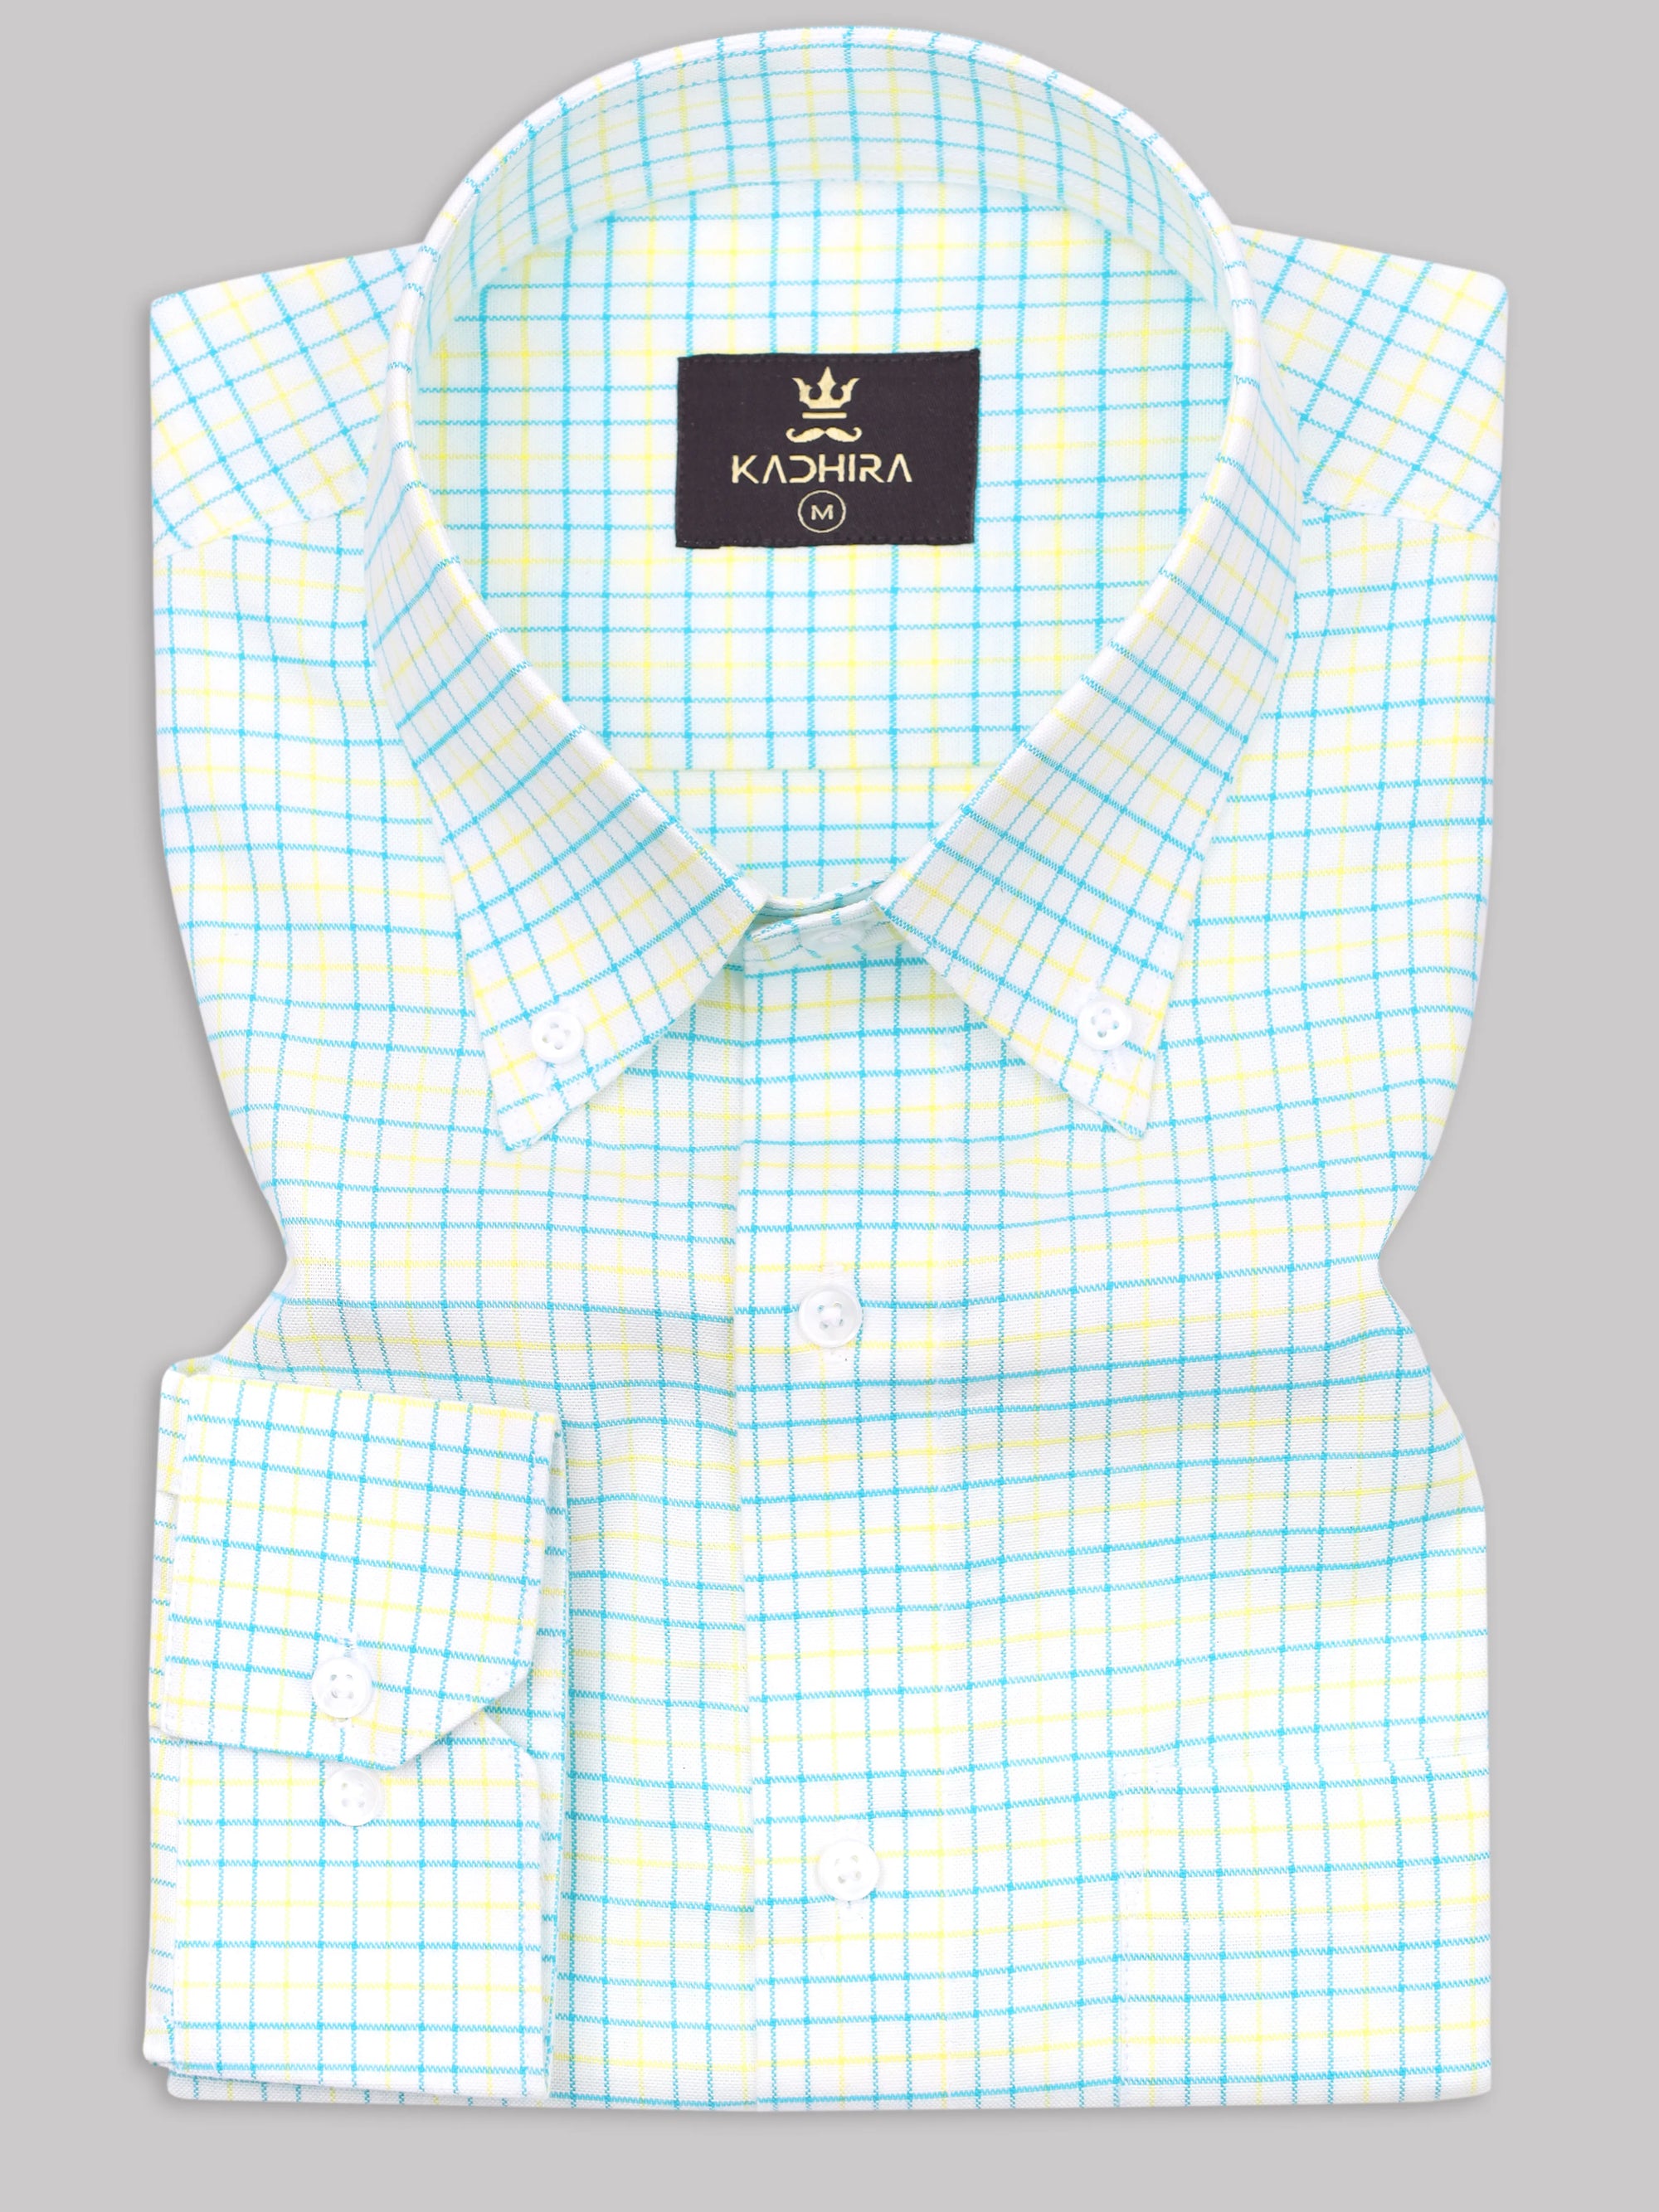 Pacific Blue With Yellow Tattersall Checks Premium White Cotton Shirt ...